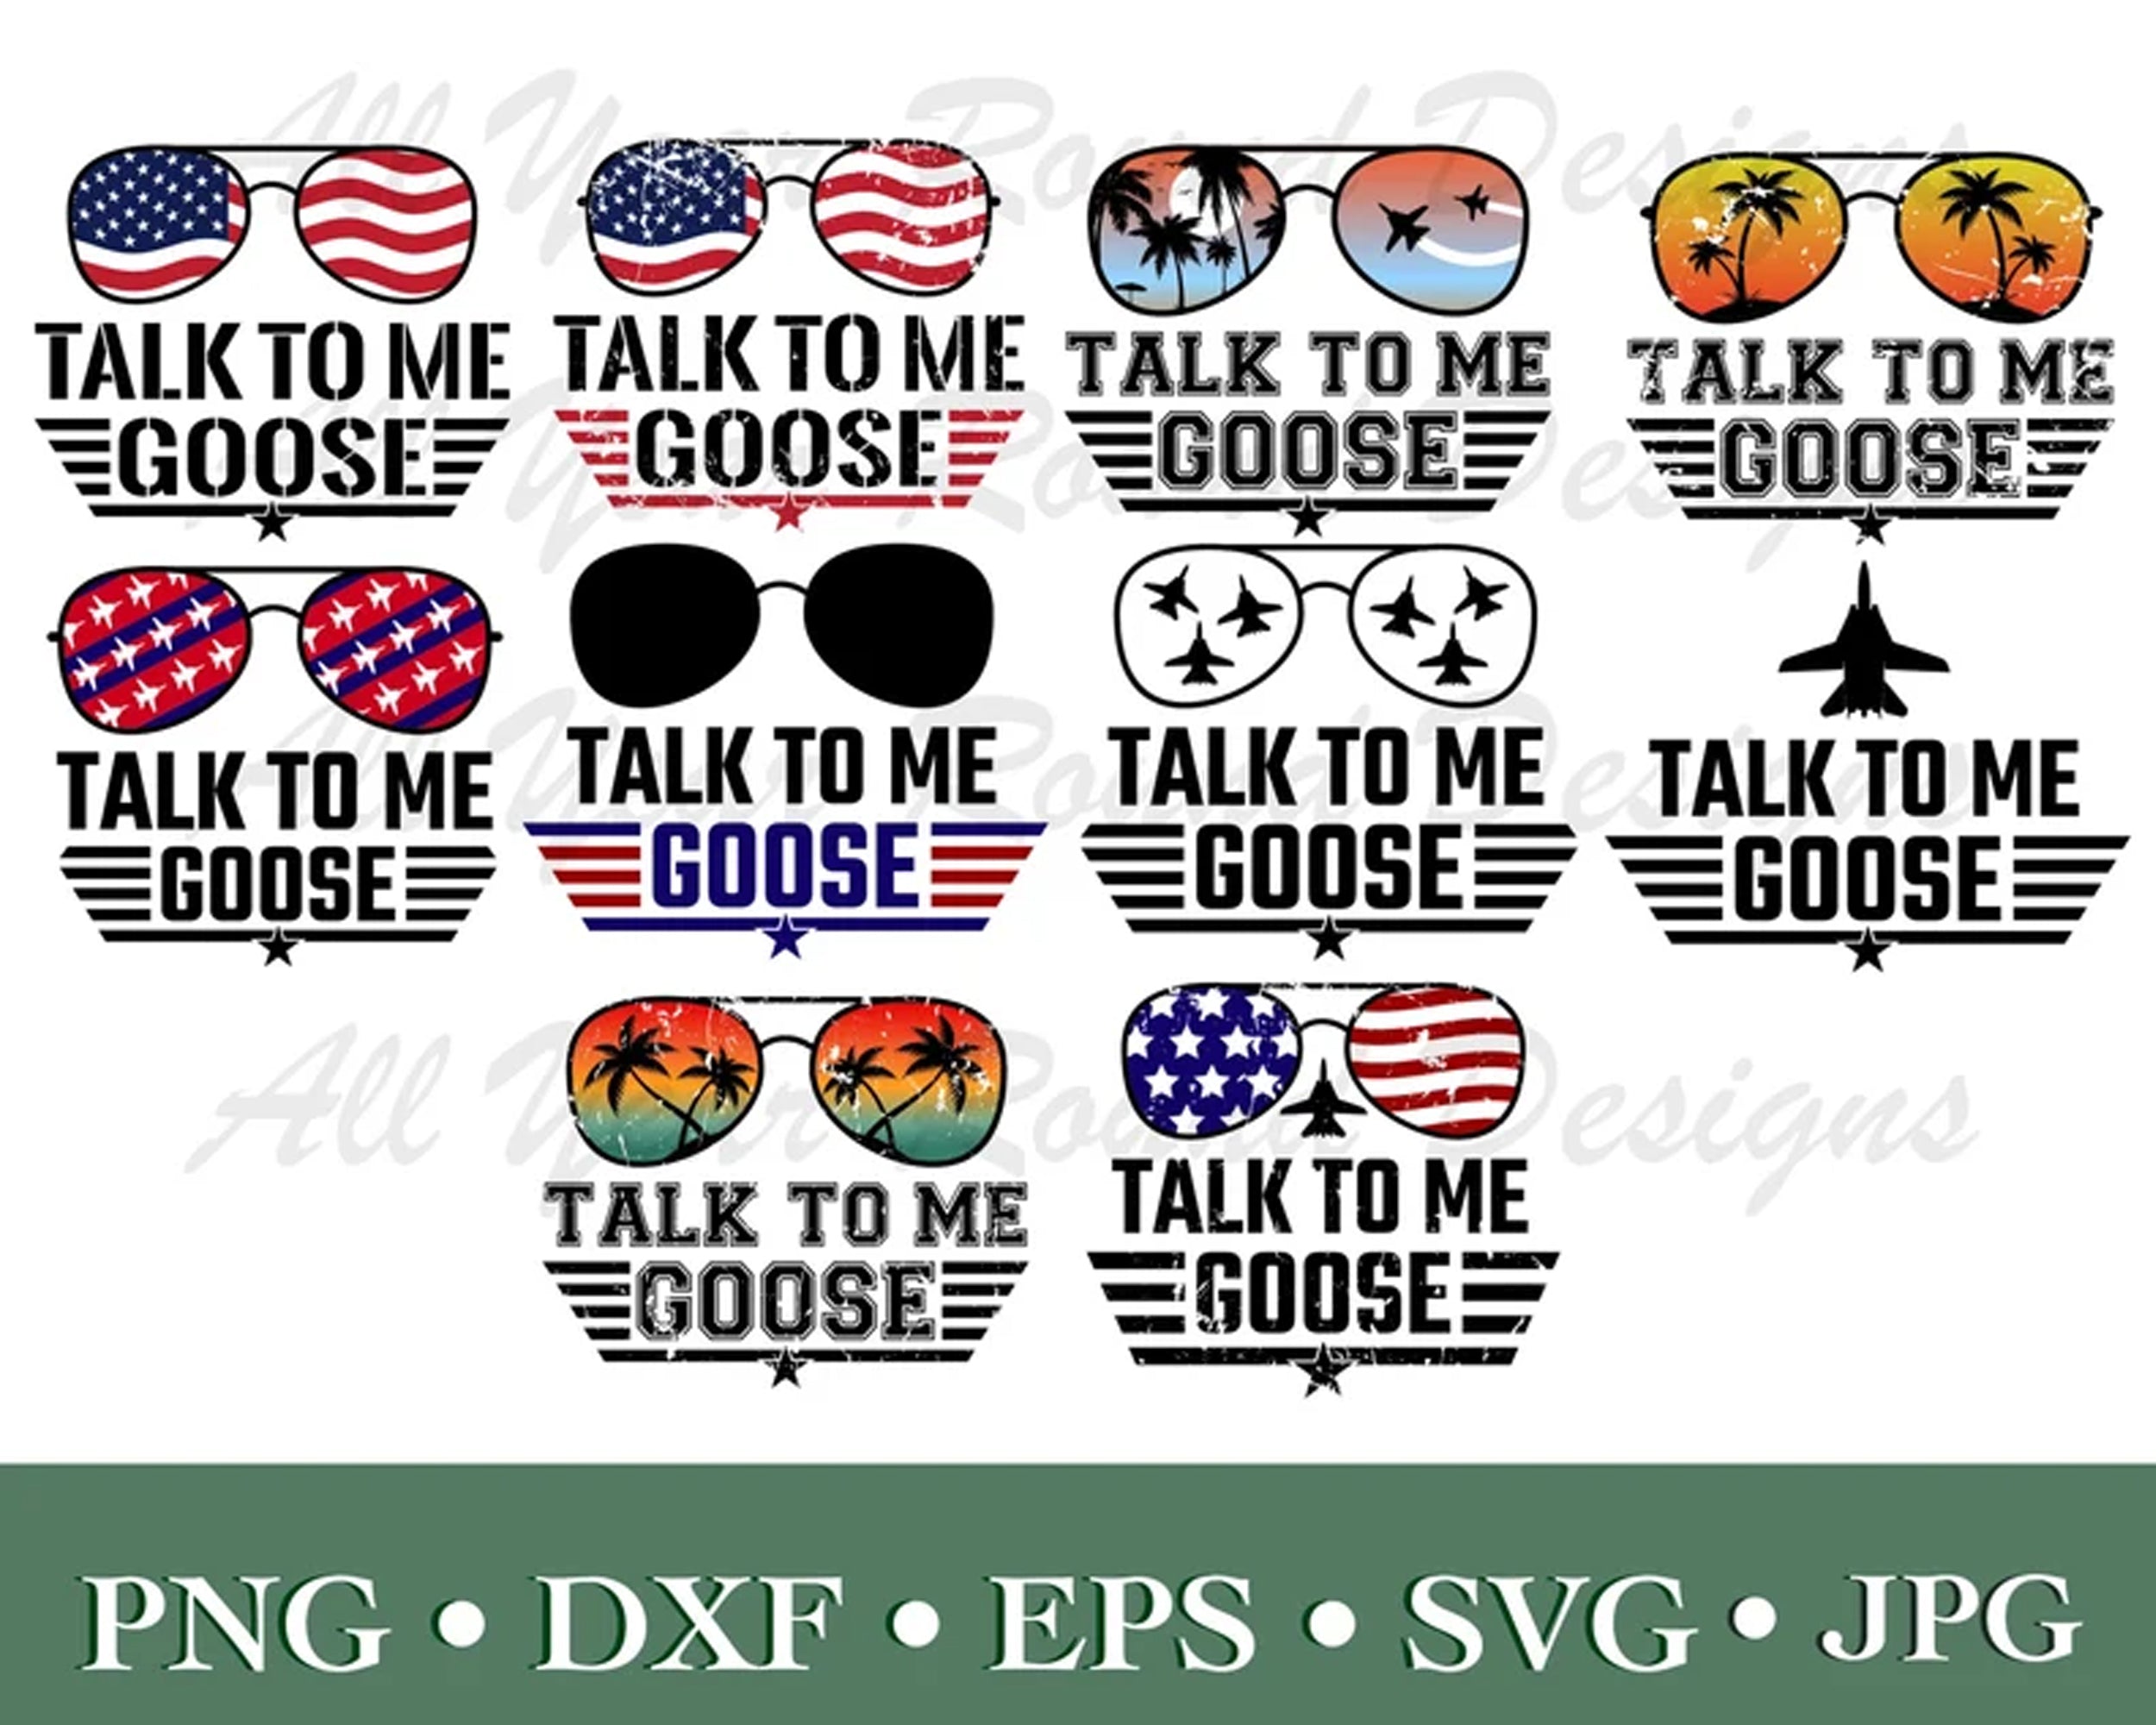 Top Gun Movie SVG Design Bundle | Top Gun Digital Design Pack | Top Gun SVG Download | Top Gun Movie | Top Gun Maverick | Top Gun Goose